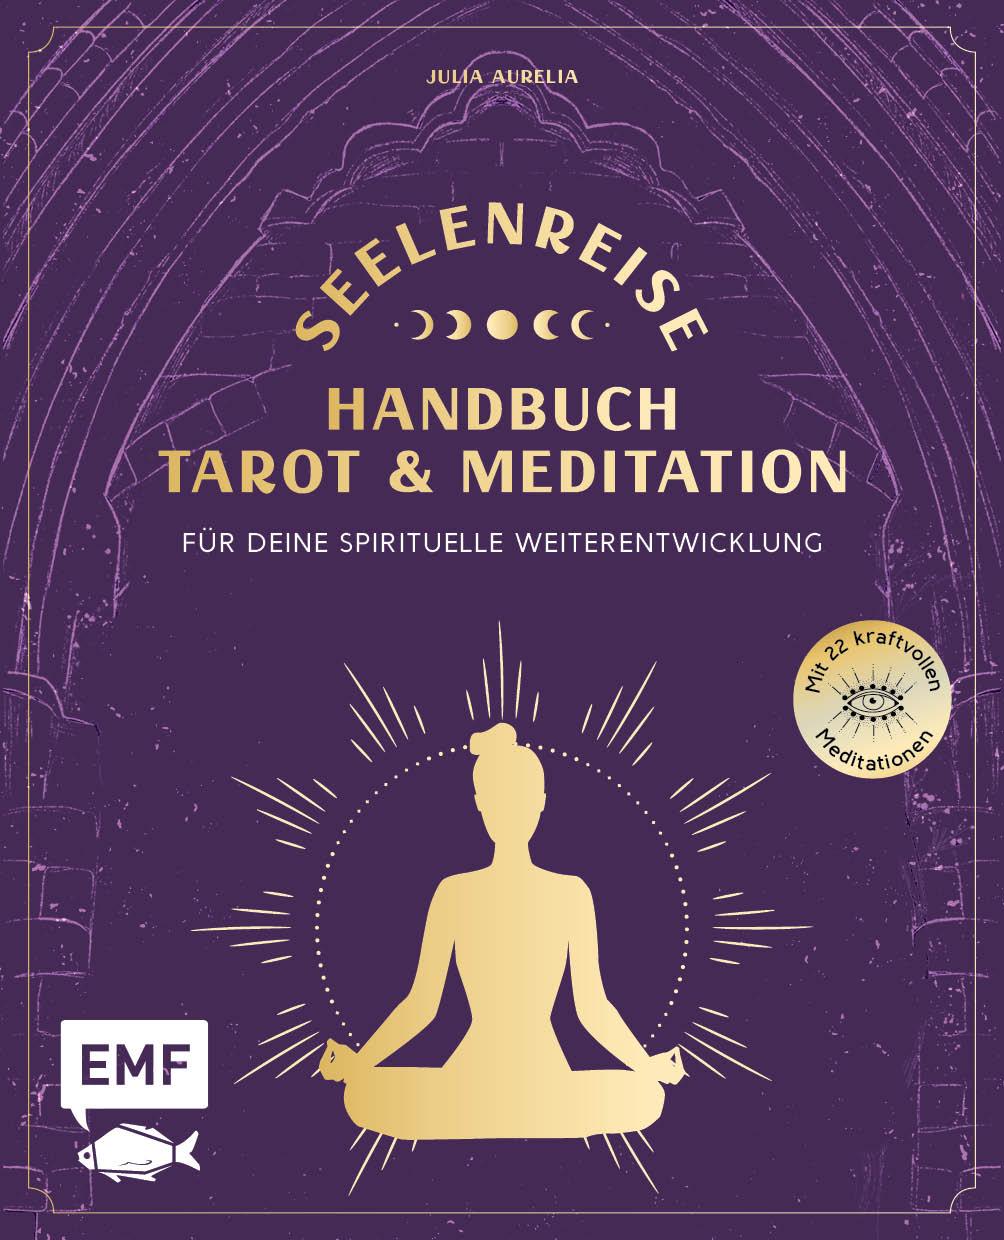 Kniha Seelenreise - Tarot und Meditation: Handbuch für deine spirituelle Weiterentwicklung 